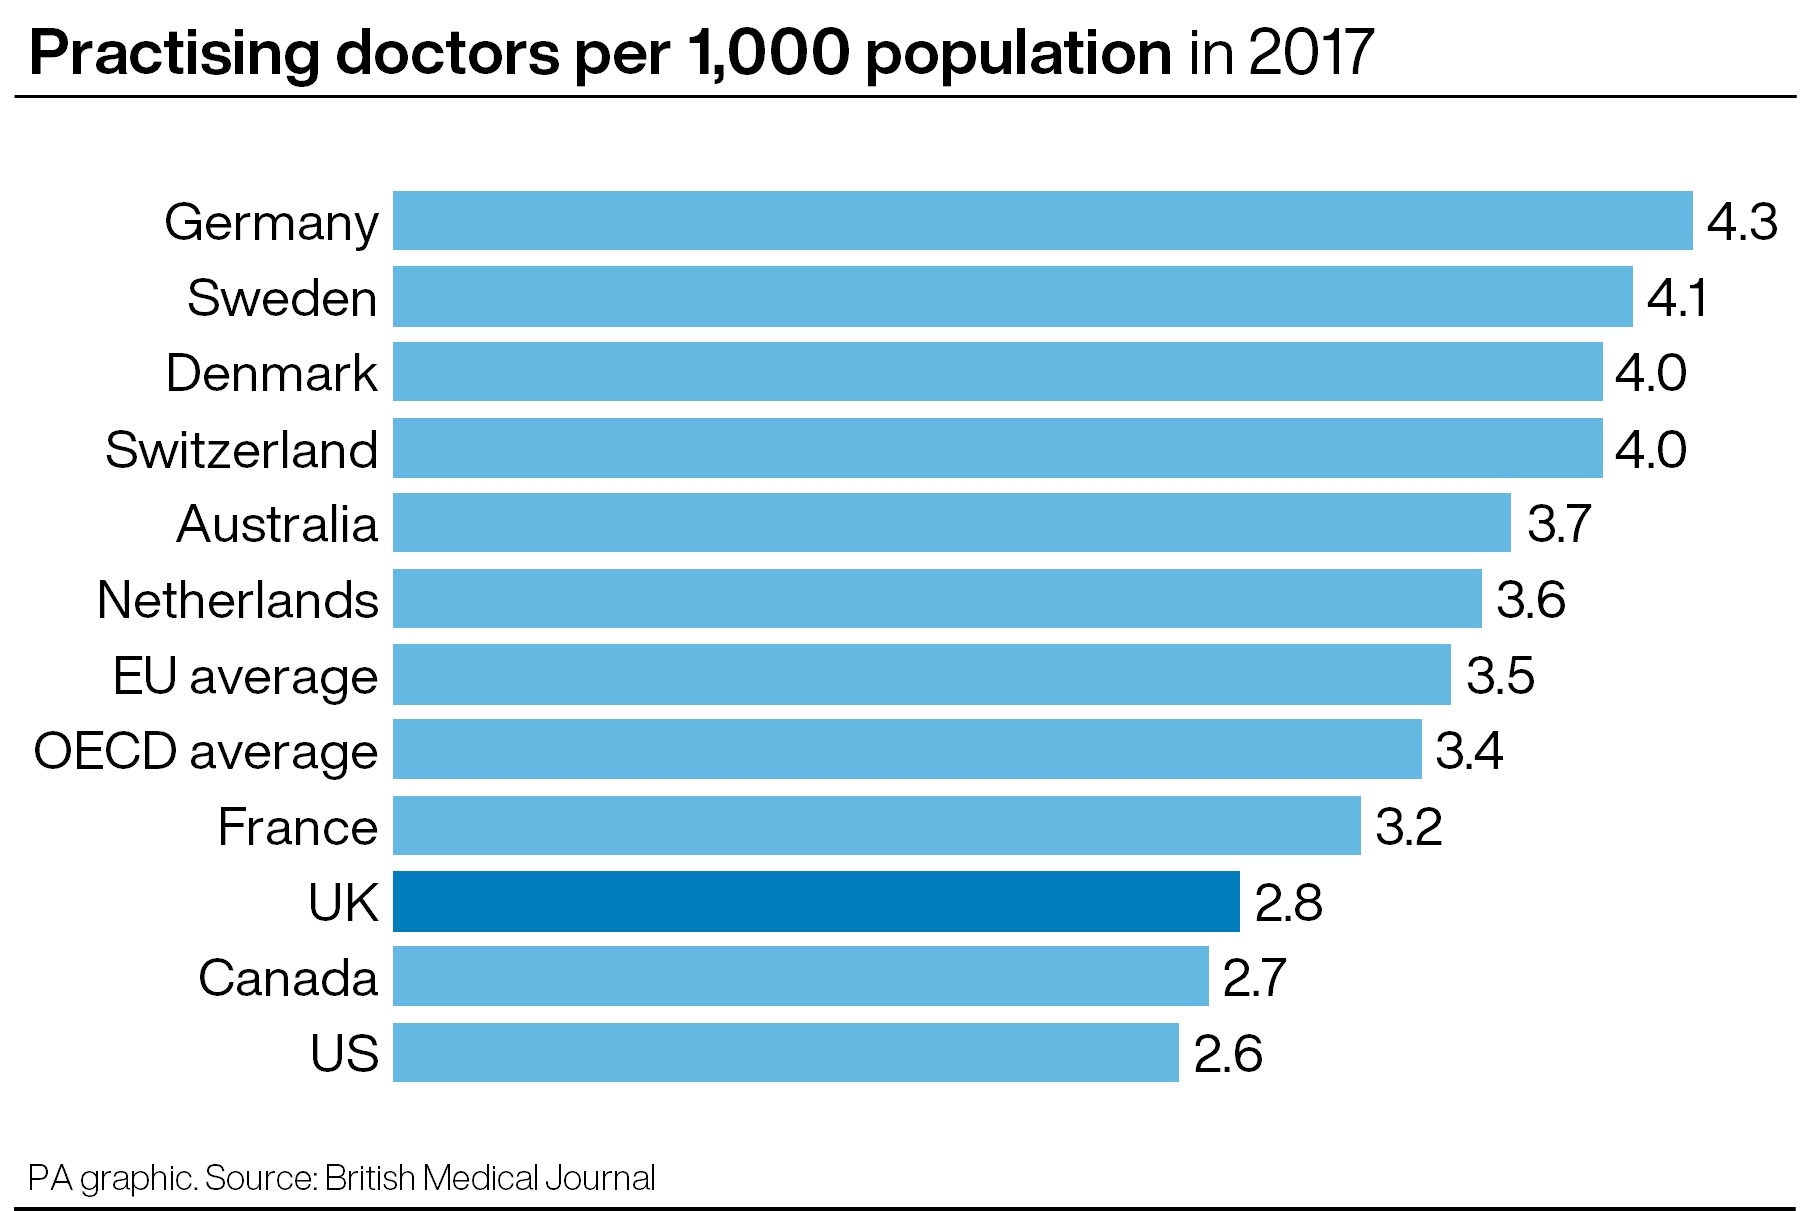 Practising doctors per 1,000 population in 2017